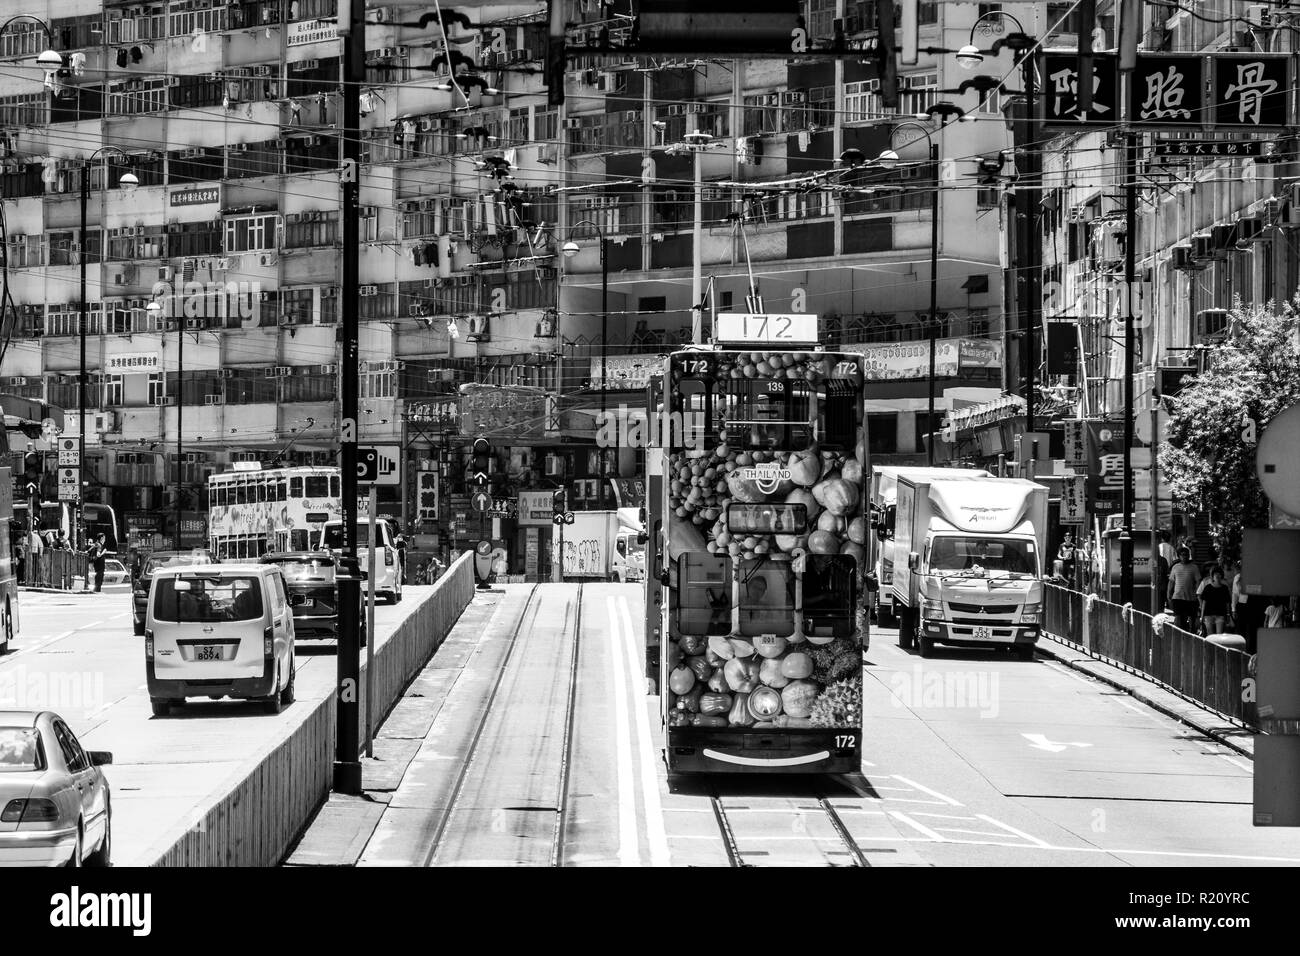 Hong Kong, China - 16 Mai 2018: Straßenbahn und anderen Verkehr in den Straßen von North Point, eine hohe Dichte meist Arbeiterklasse Wohnviertel in Hongkong Stockfoto